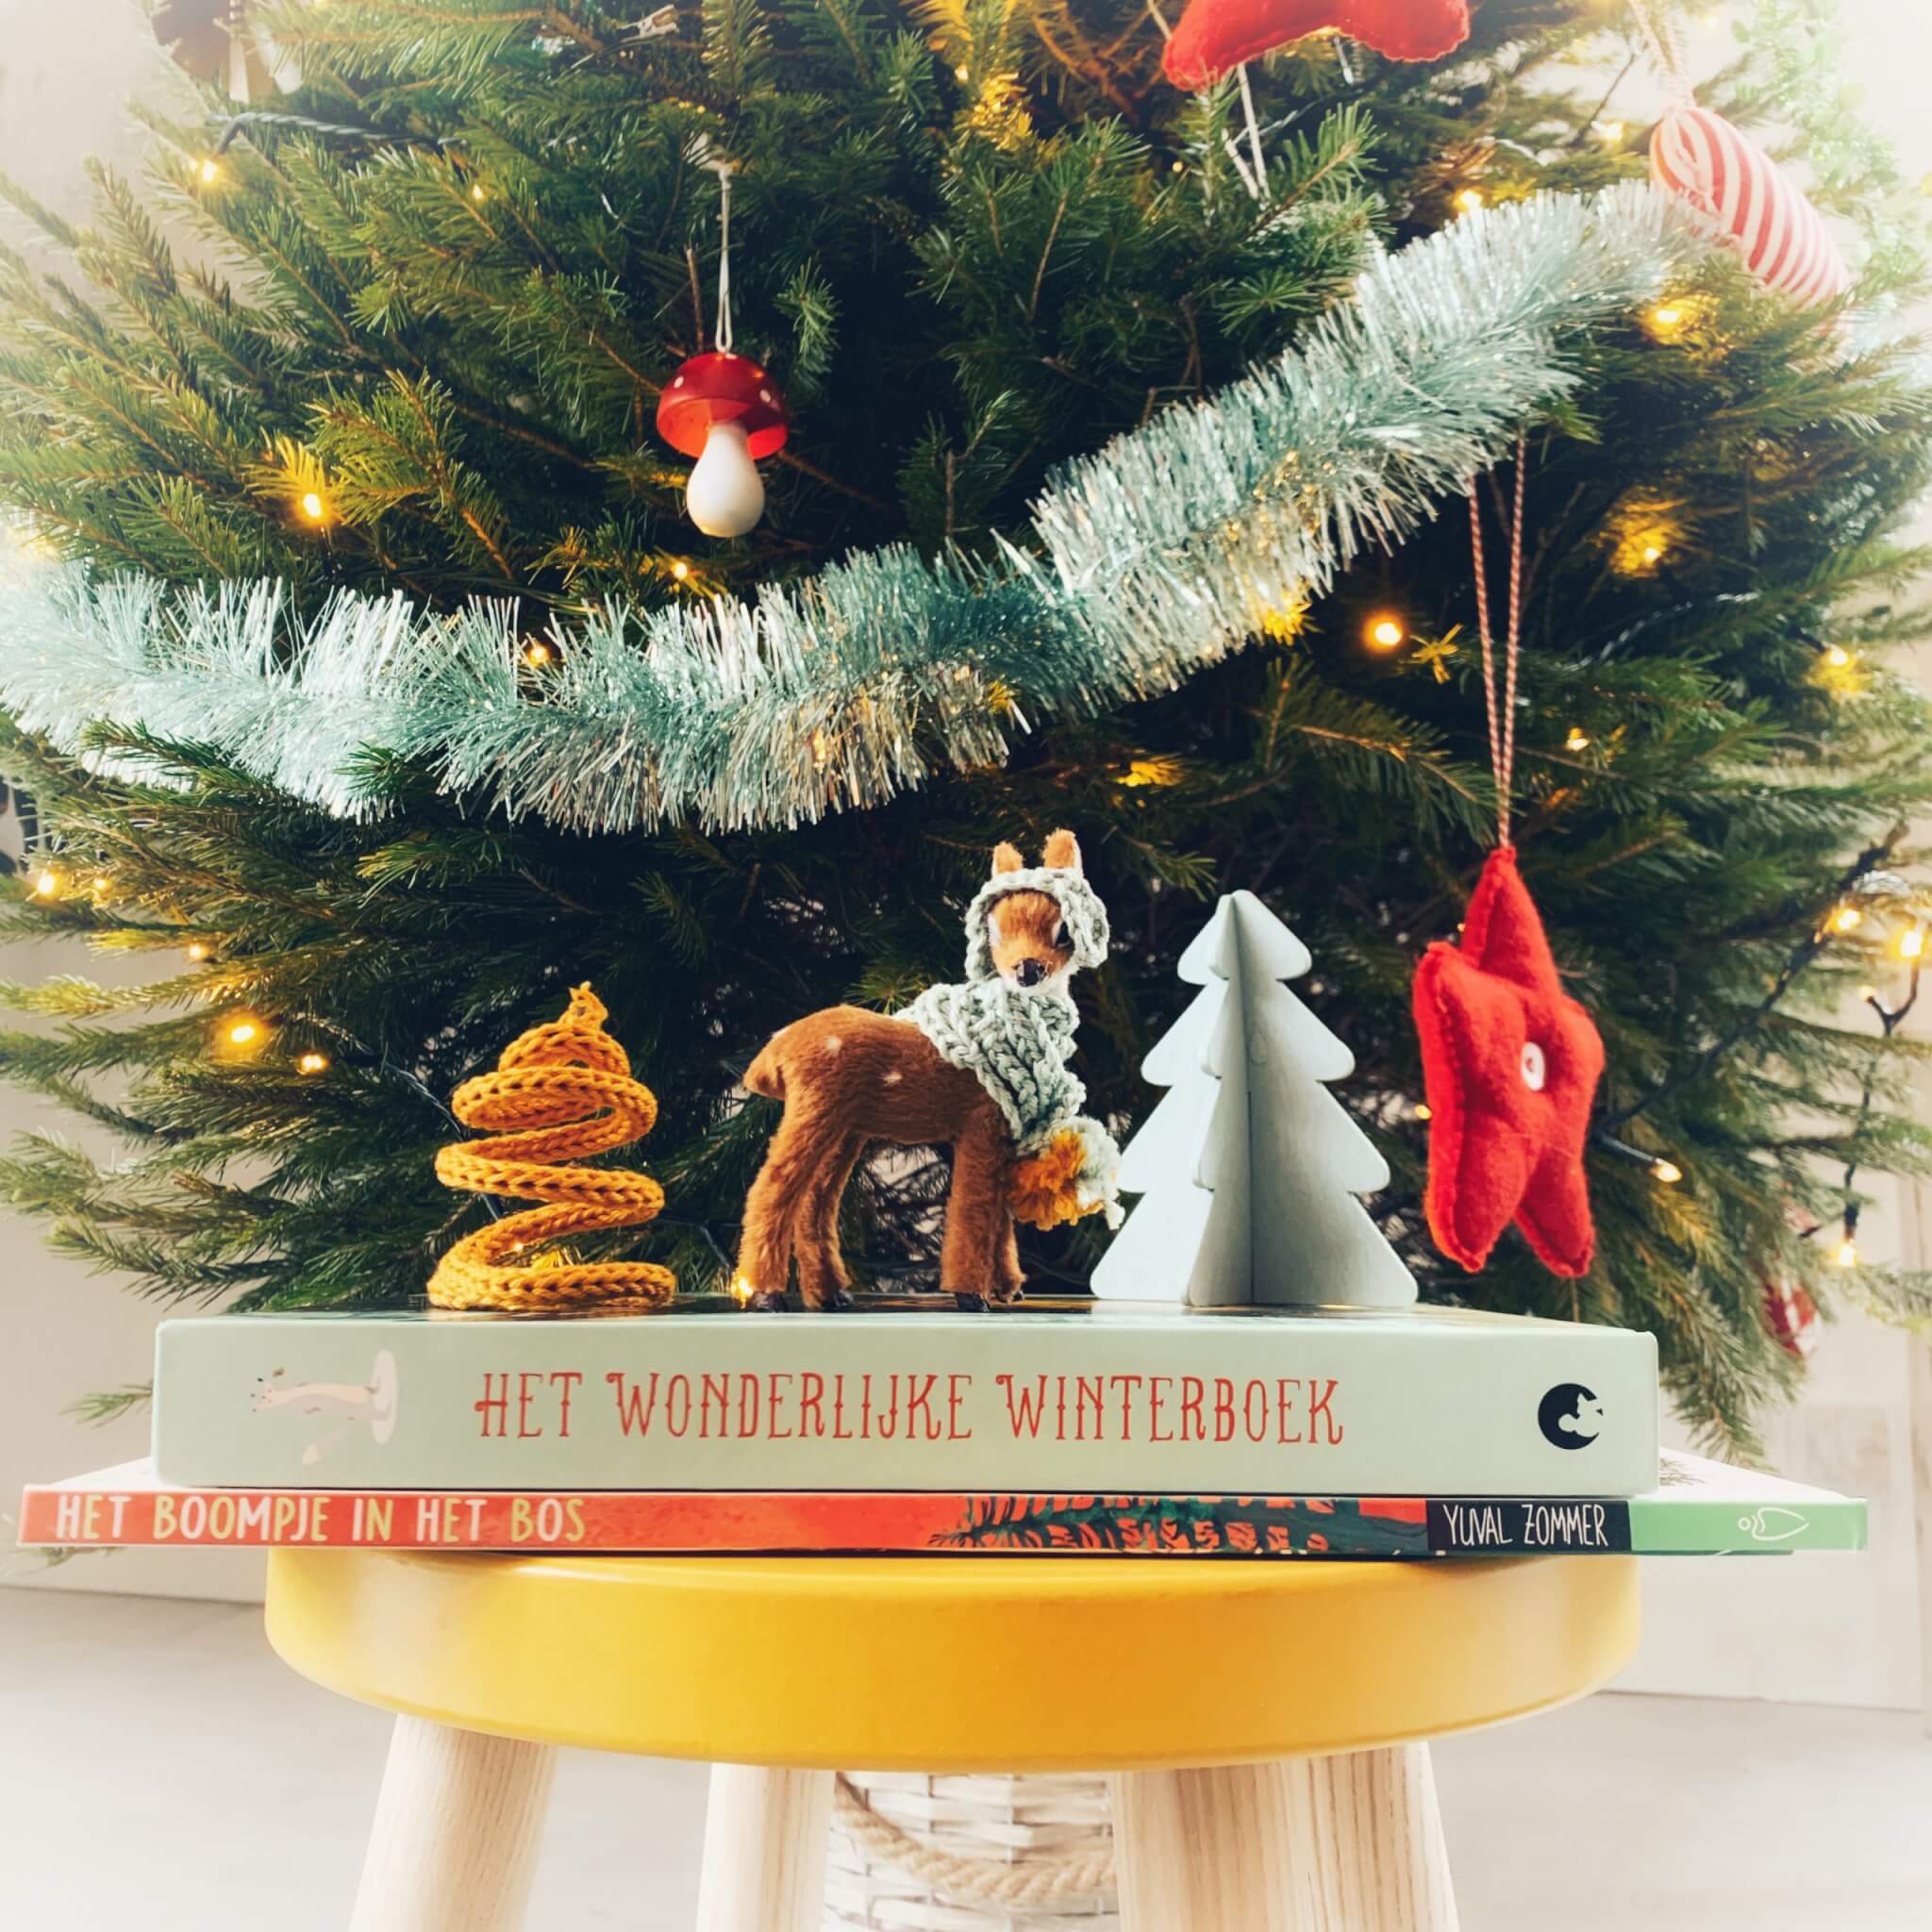 Kinderboeken over de winter, leuk voor onder de kerstboom